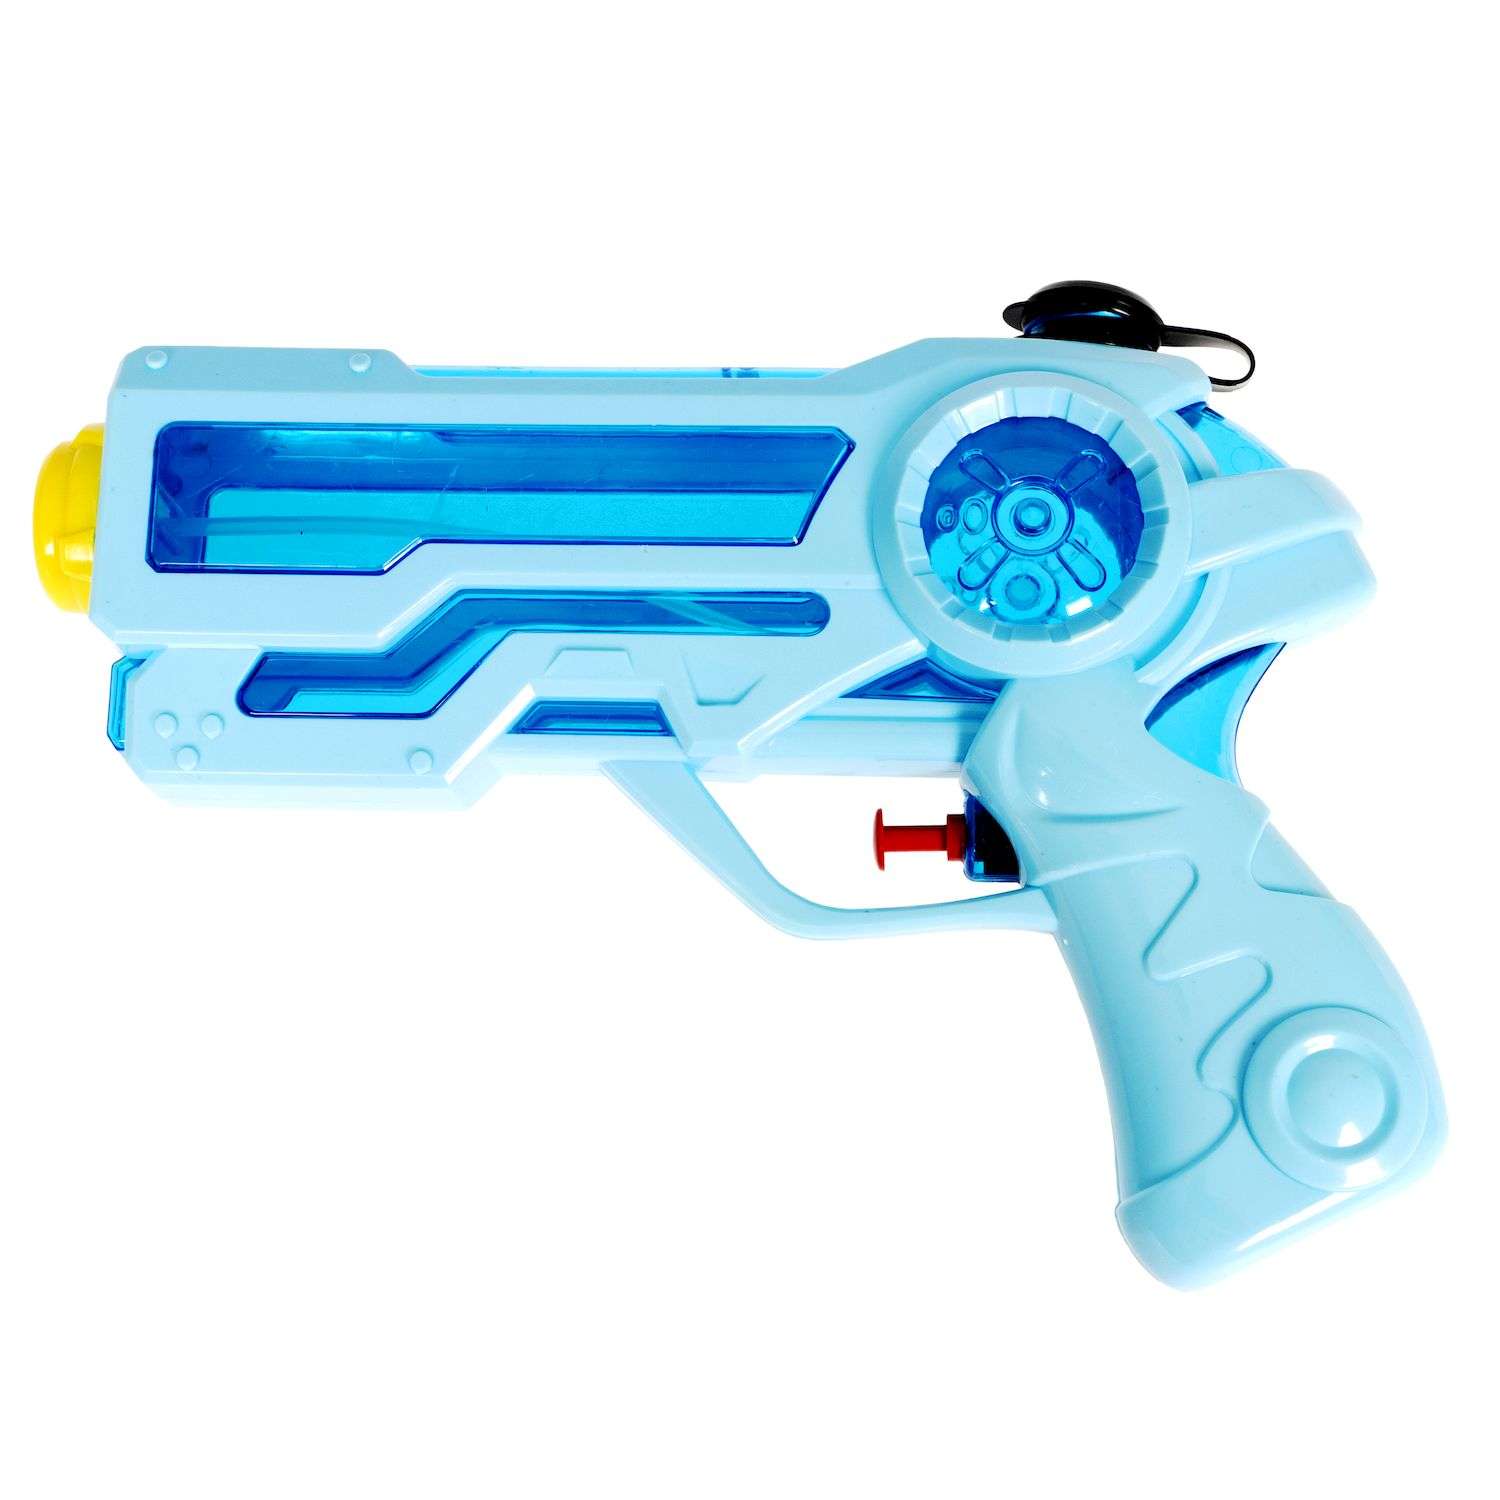 Водный пистолет BONDIBON голубой с синим прозрачным резервуаром серия Наше Лето - фото 3